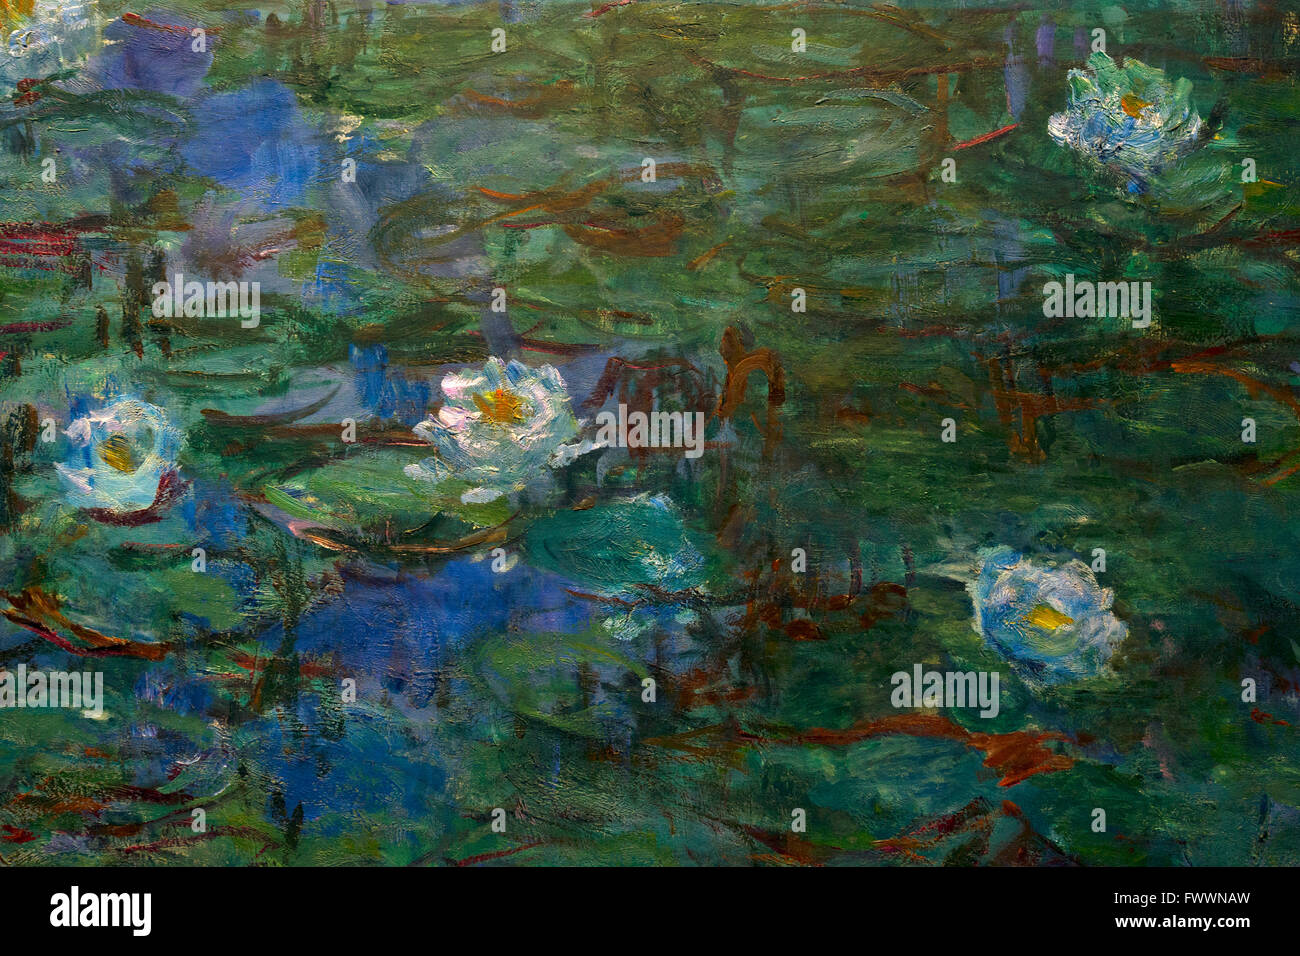 Dettaglio delle ninfee blu, nympheas bleus di Claude Monet, 1916-1919, il Musee D'Orsay, Parigi, Francia, Europa Foto Stock